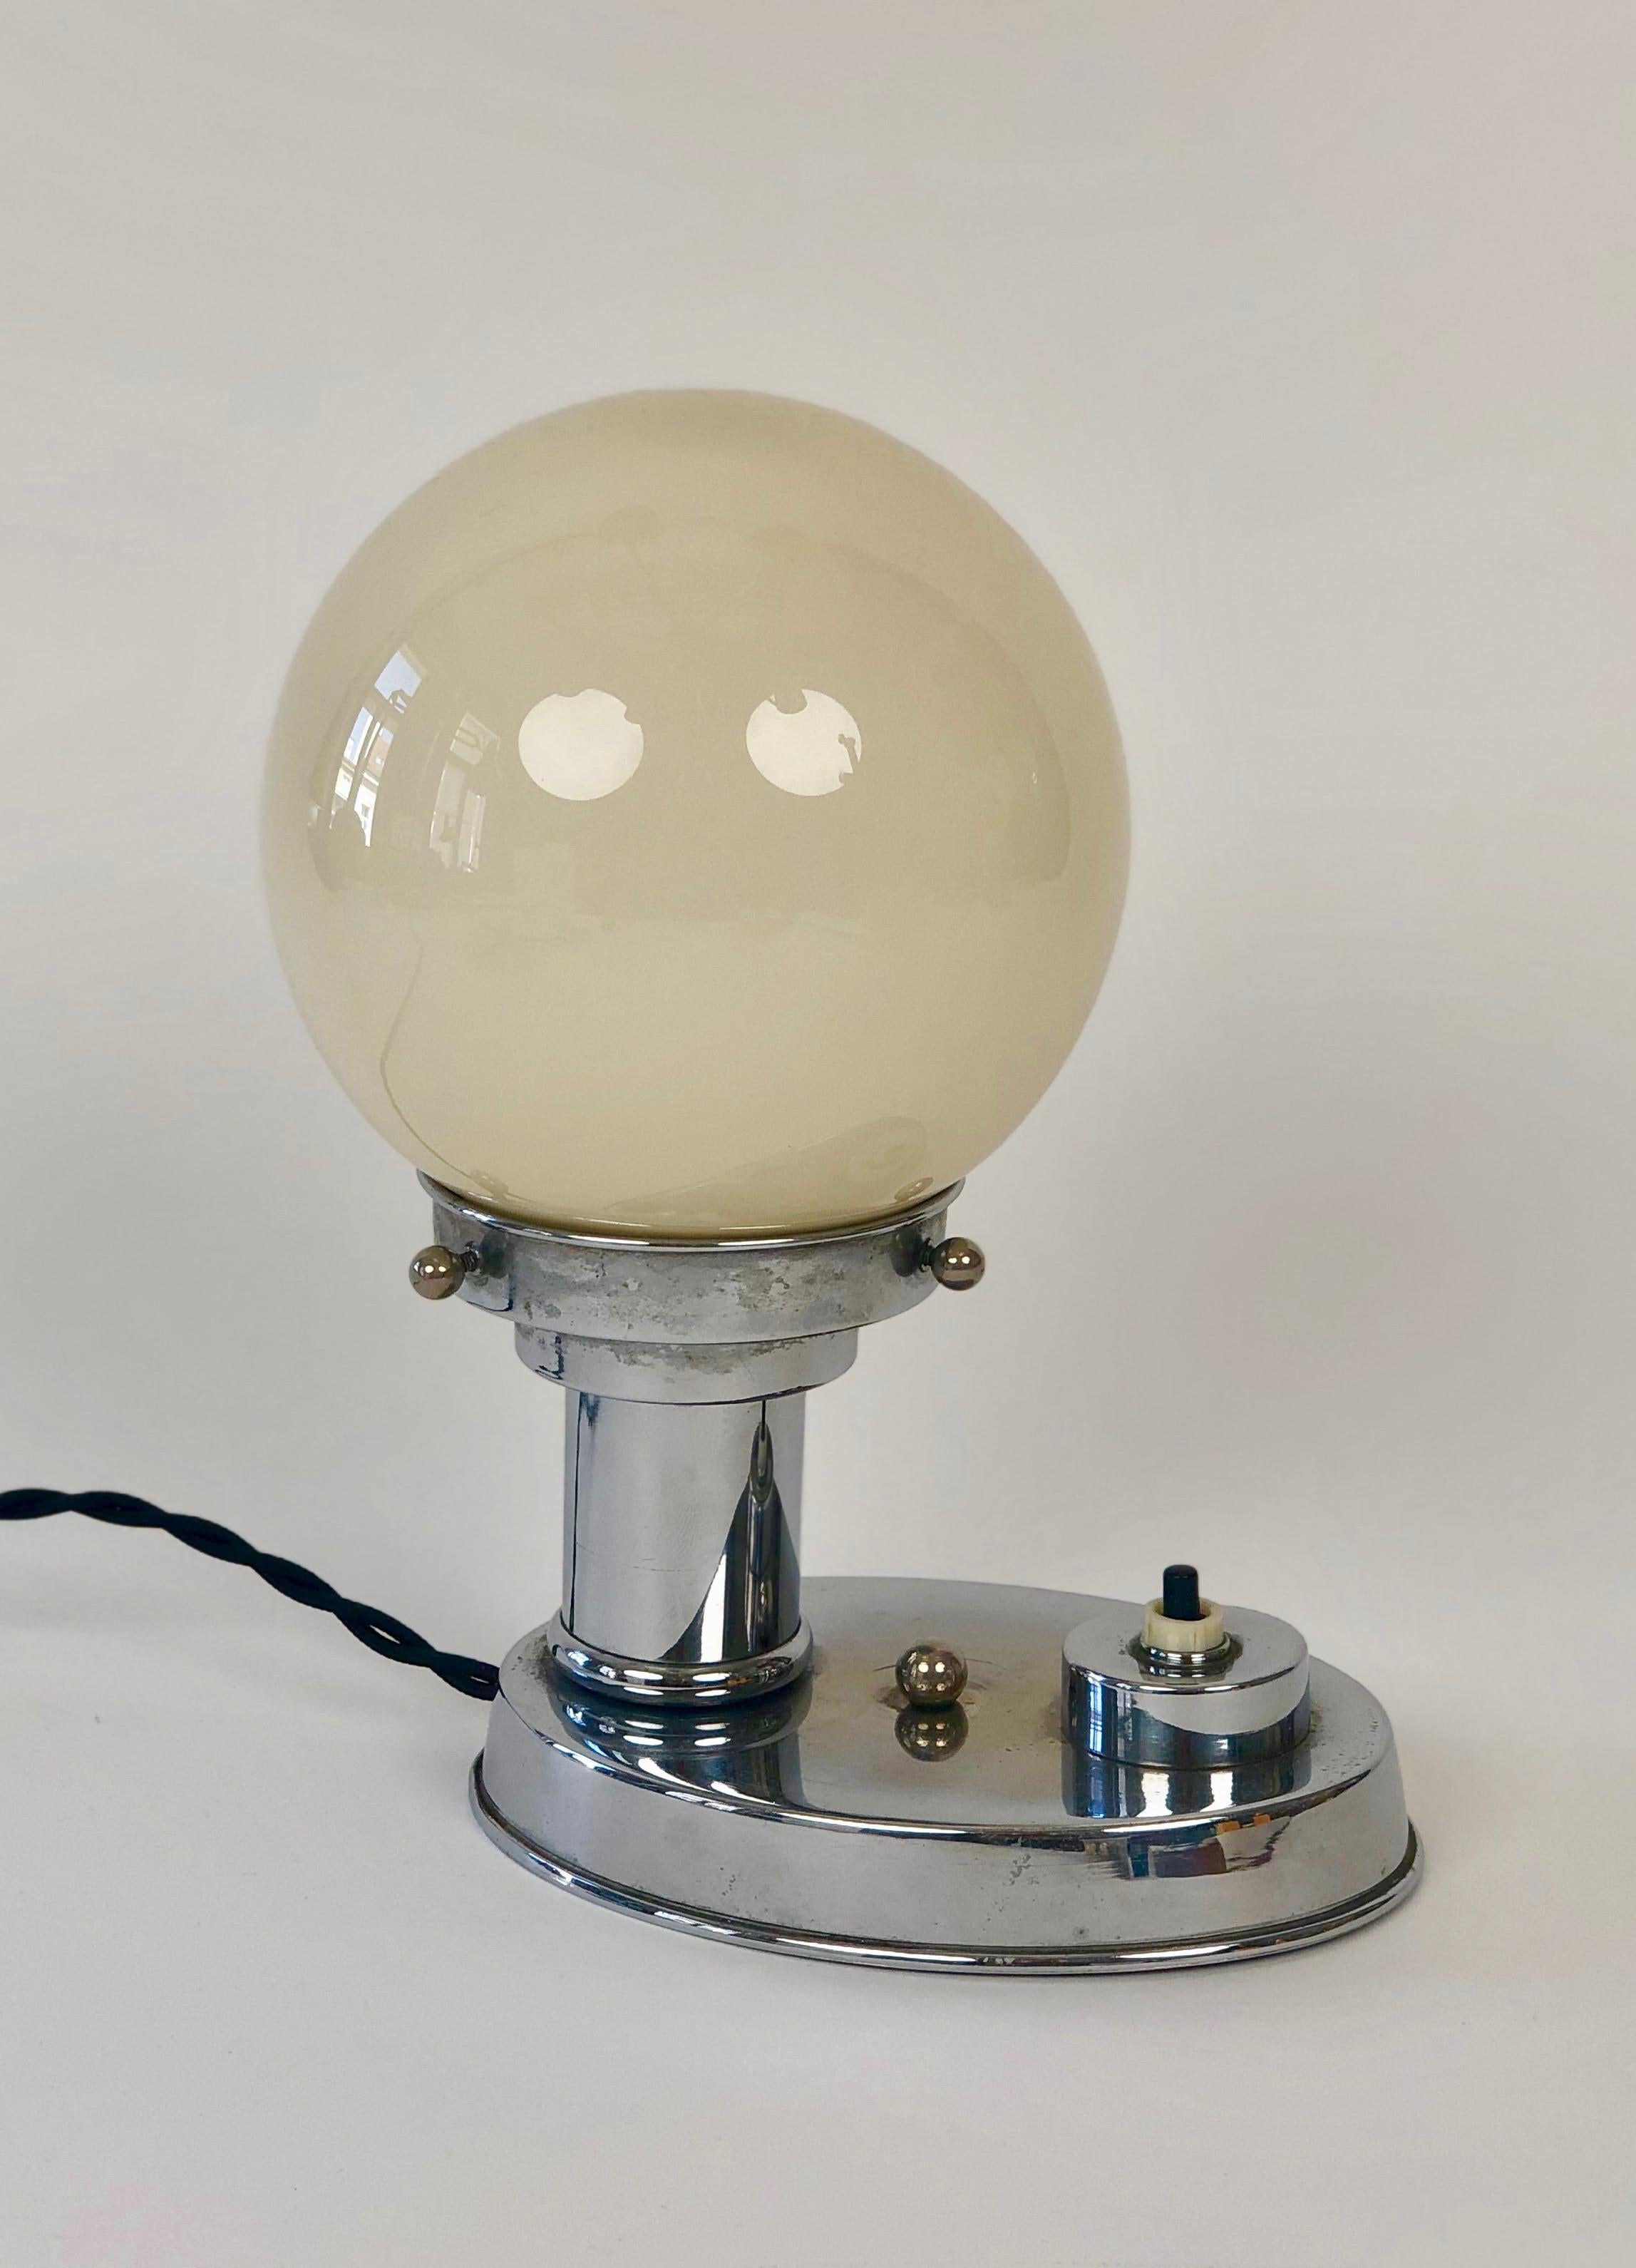 Paire de lampes de table Art Déco chromées des années 1930. 
Le chrome des deux lampes est en très bon état d'origine ; nous avons remplacé le câble électrique par un câble torsadé noir provenant d'Italie. 
La boule de verre a une couleur chaude.